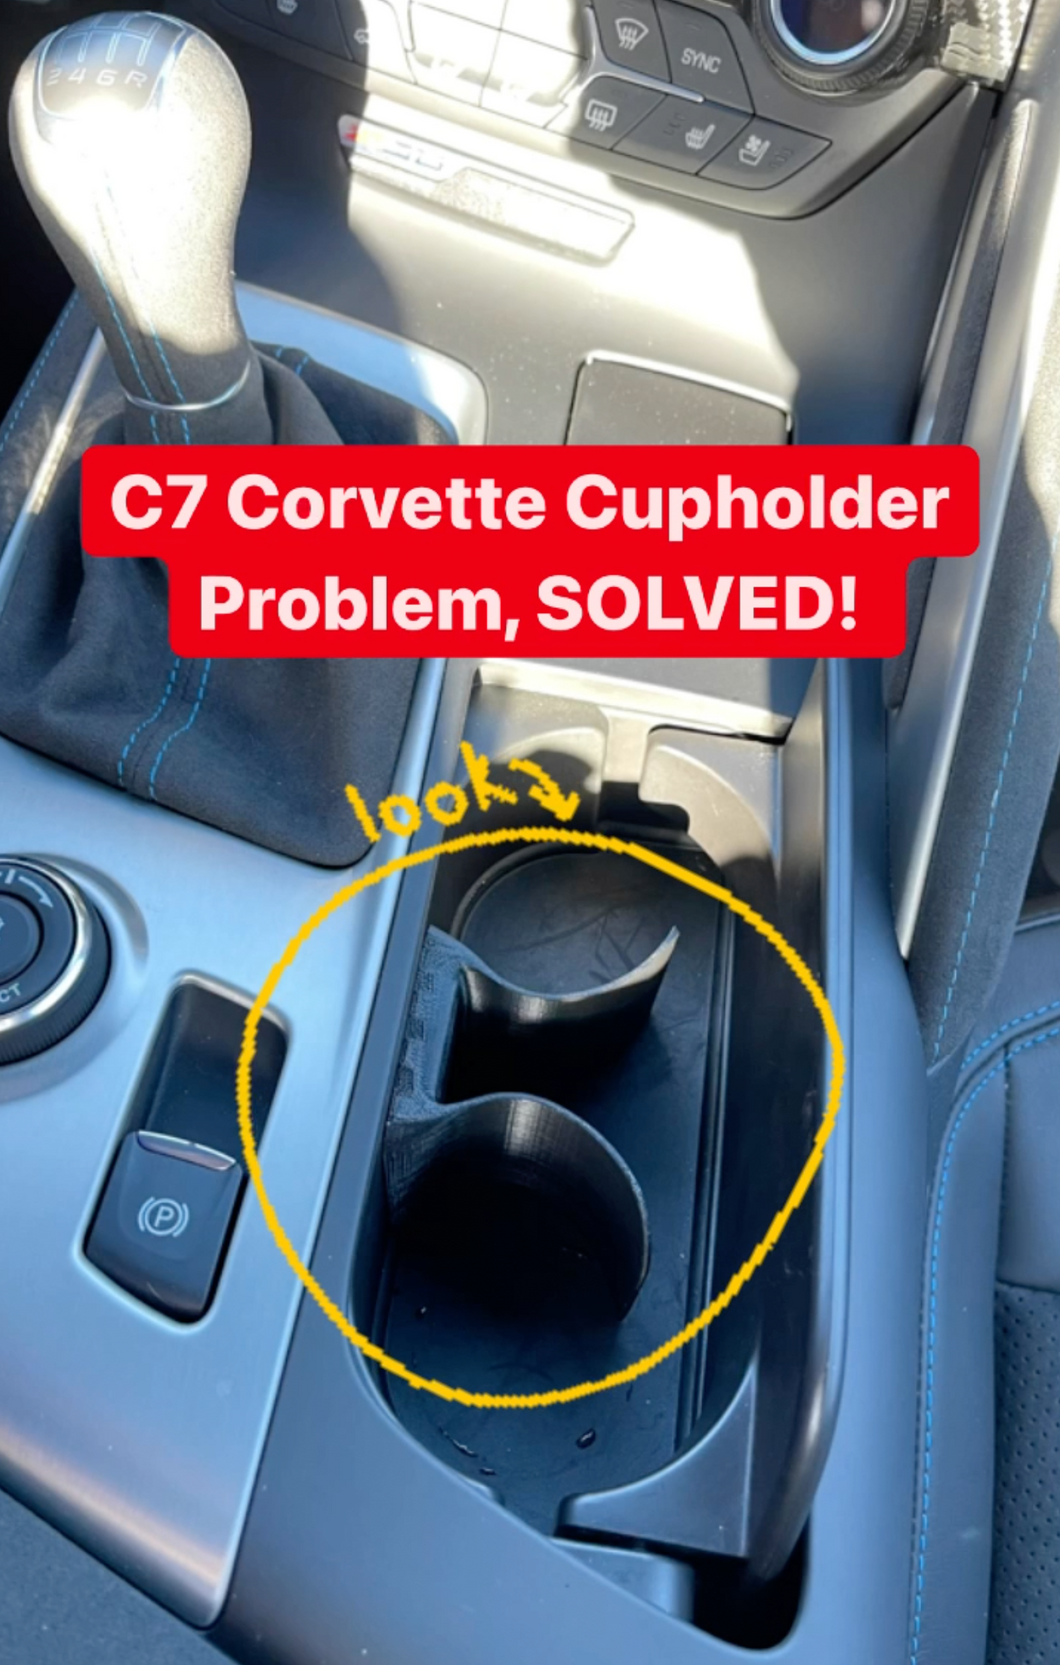 C7 Corvette Cupholder Flexible Divider